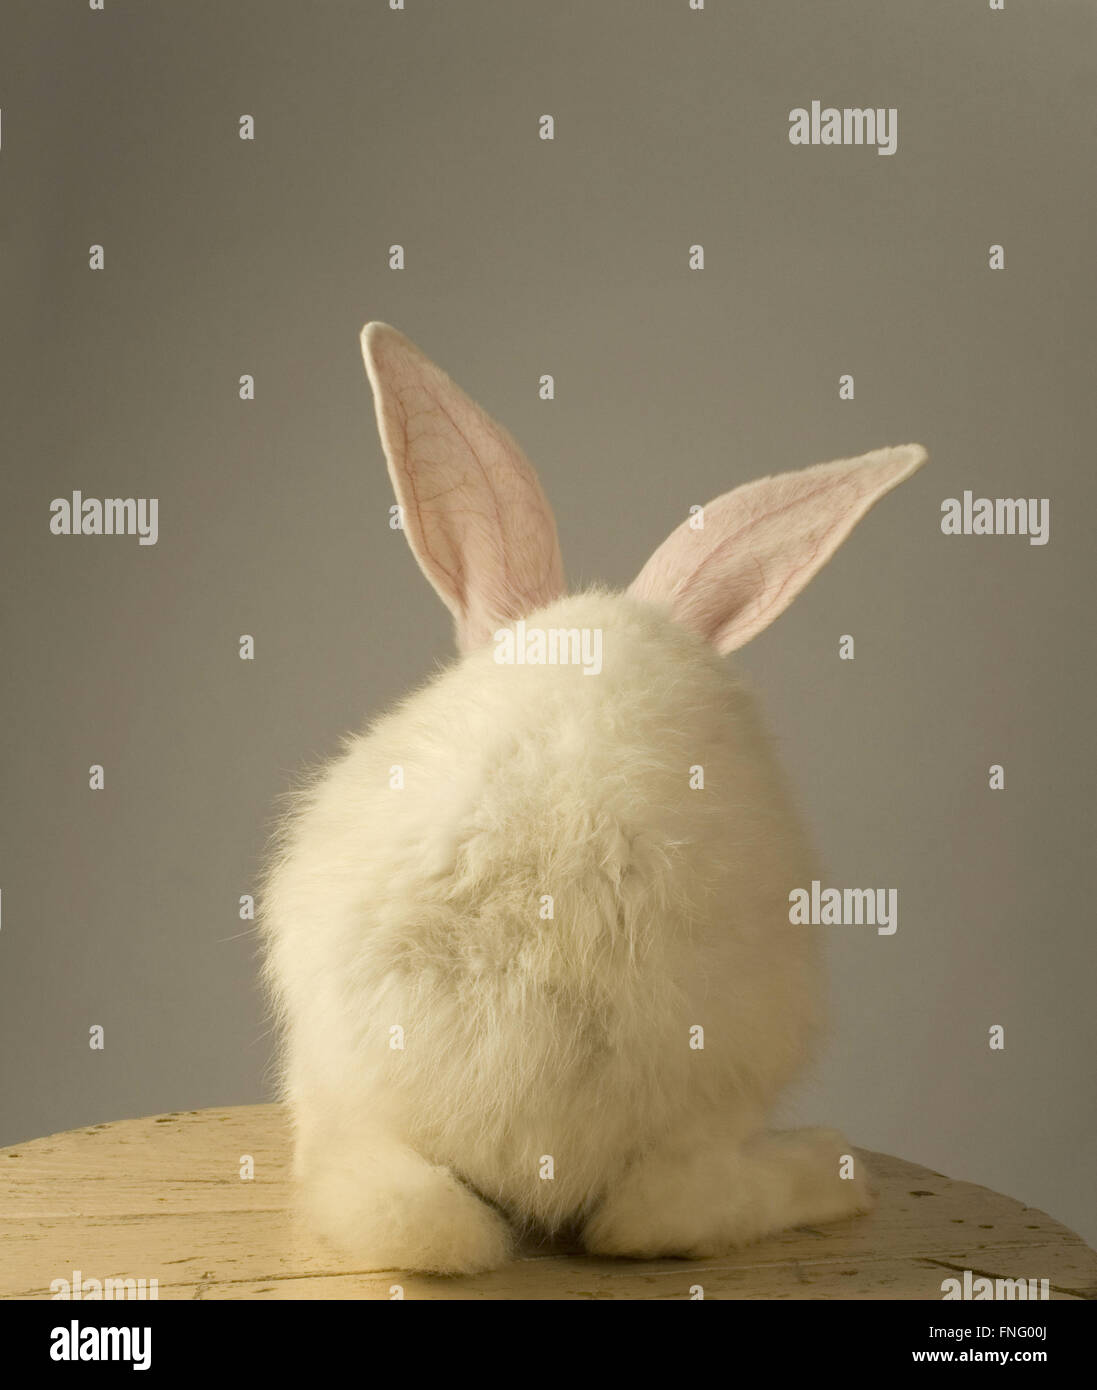 Portrait d'un lapin blanc à l'article avec l'arrière de l'appareil photo sur fond gris Banque D'Images